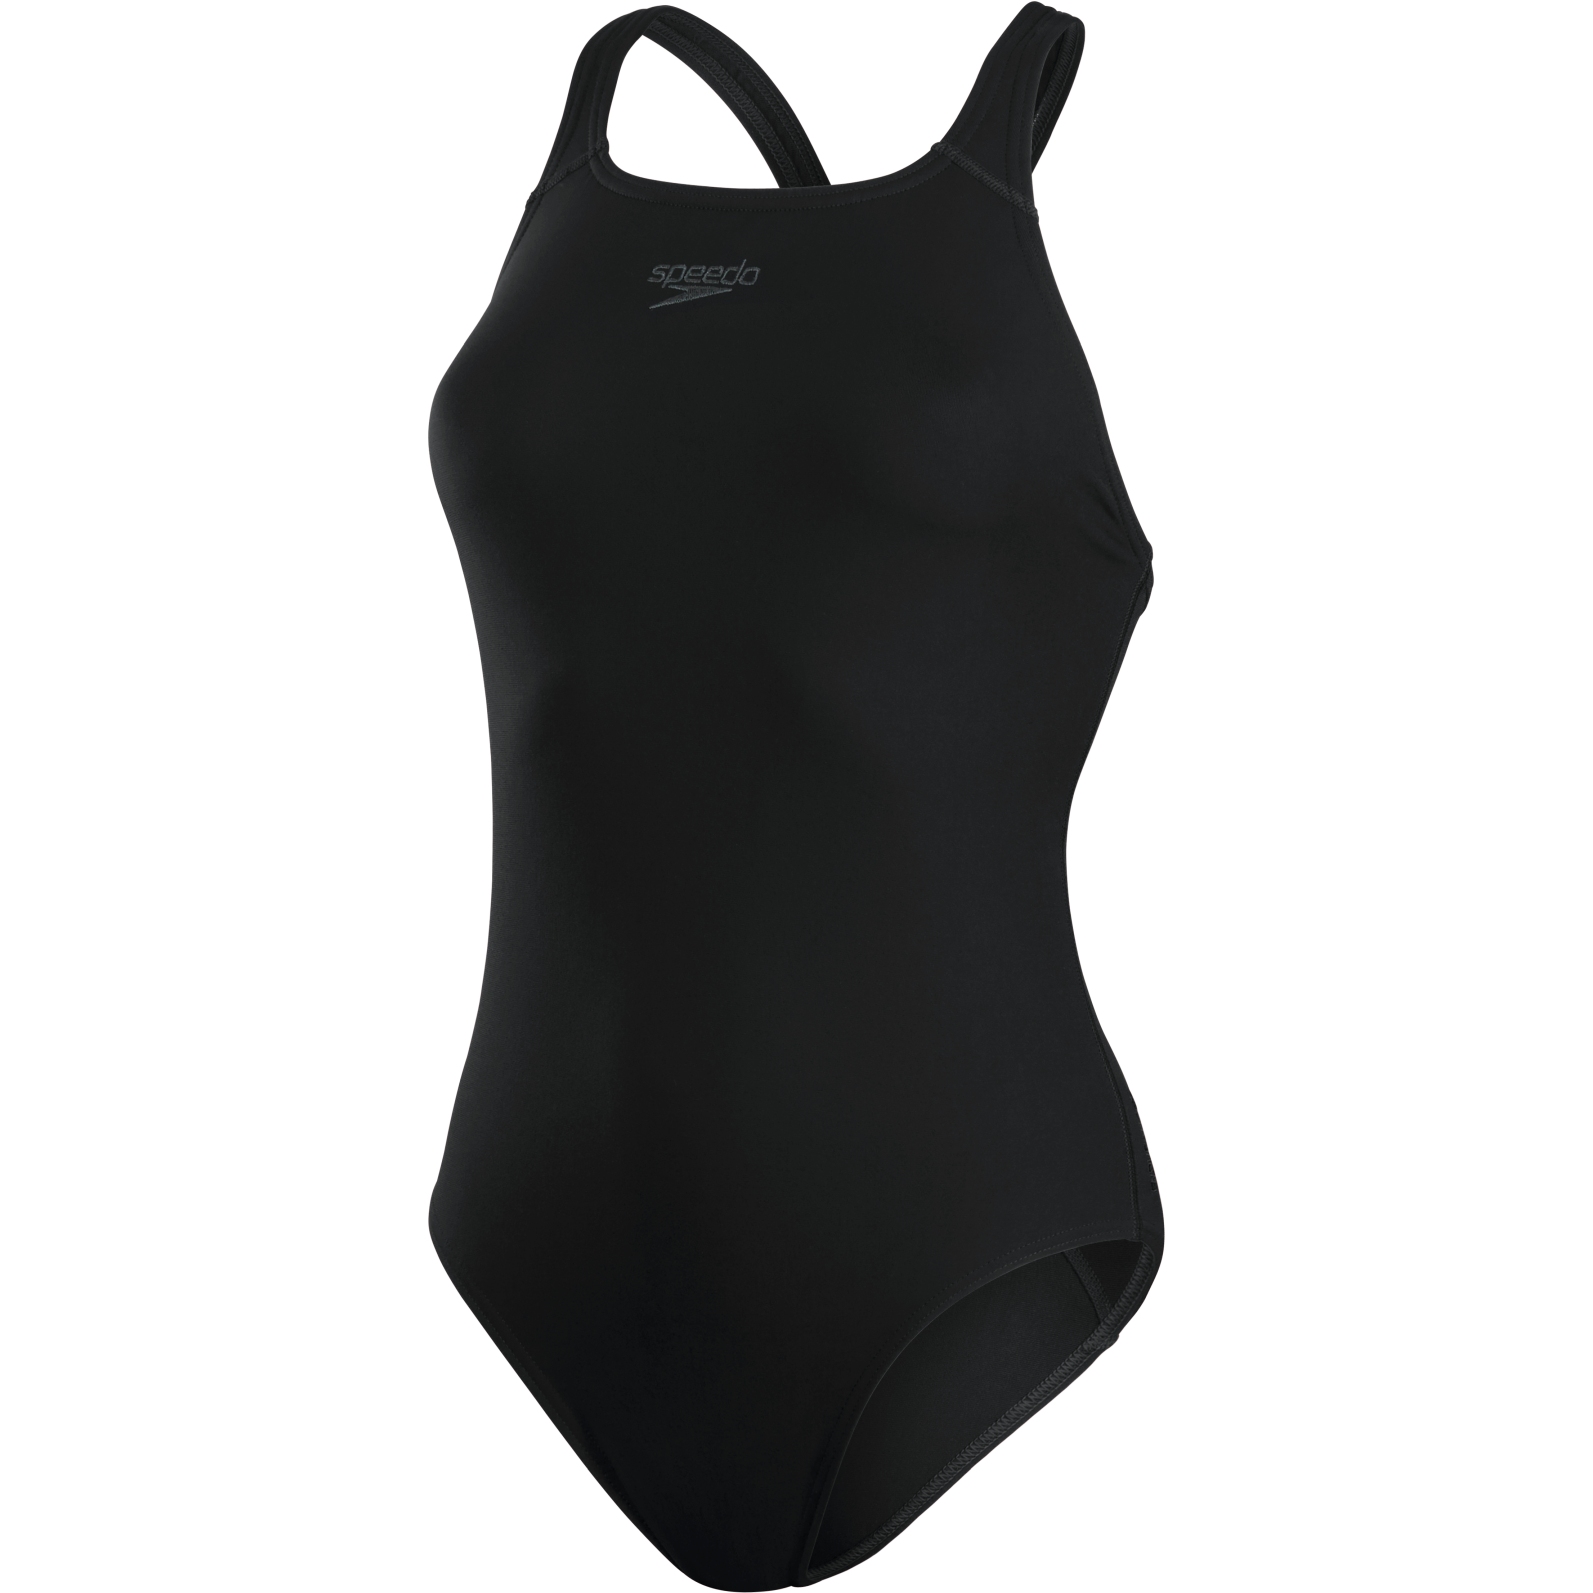 Produktbild von Speedo ECO Endurance+ Medalist Badeanzug Damen - schwarz